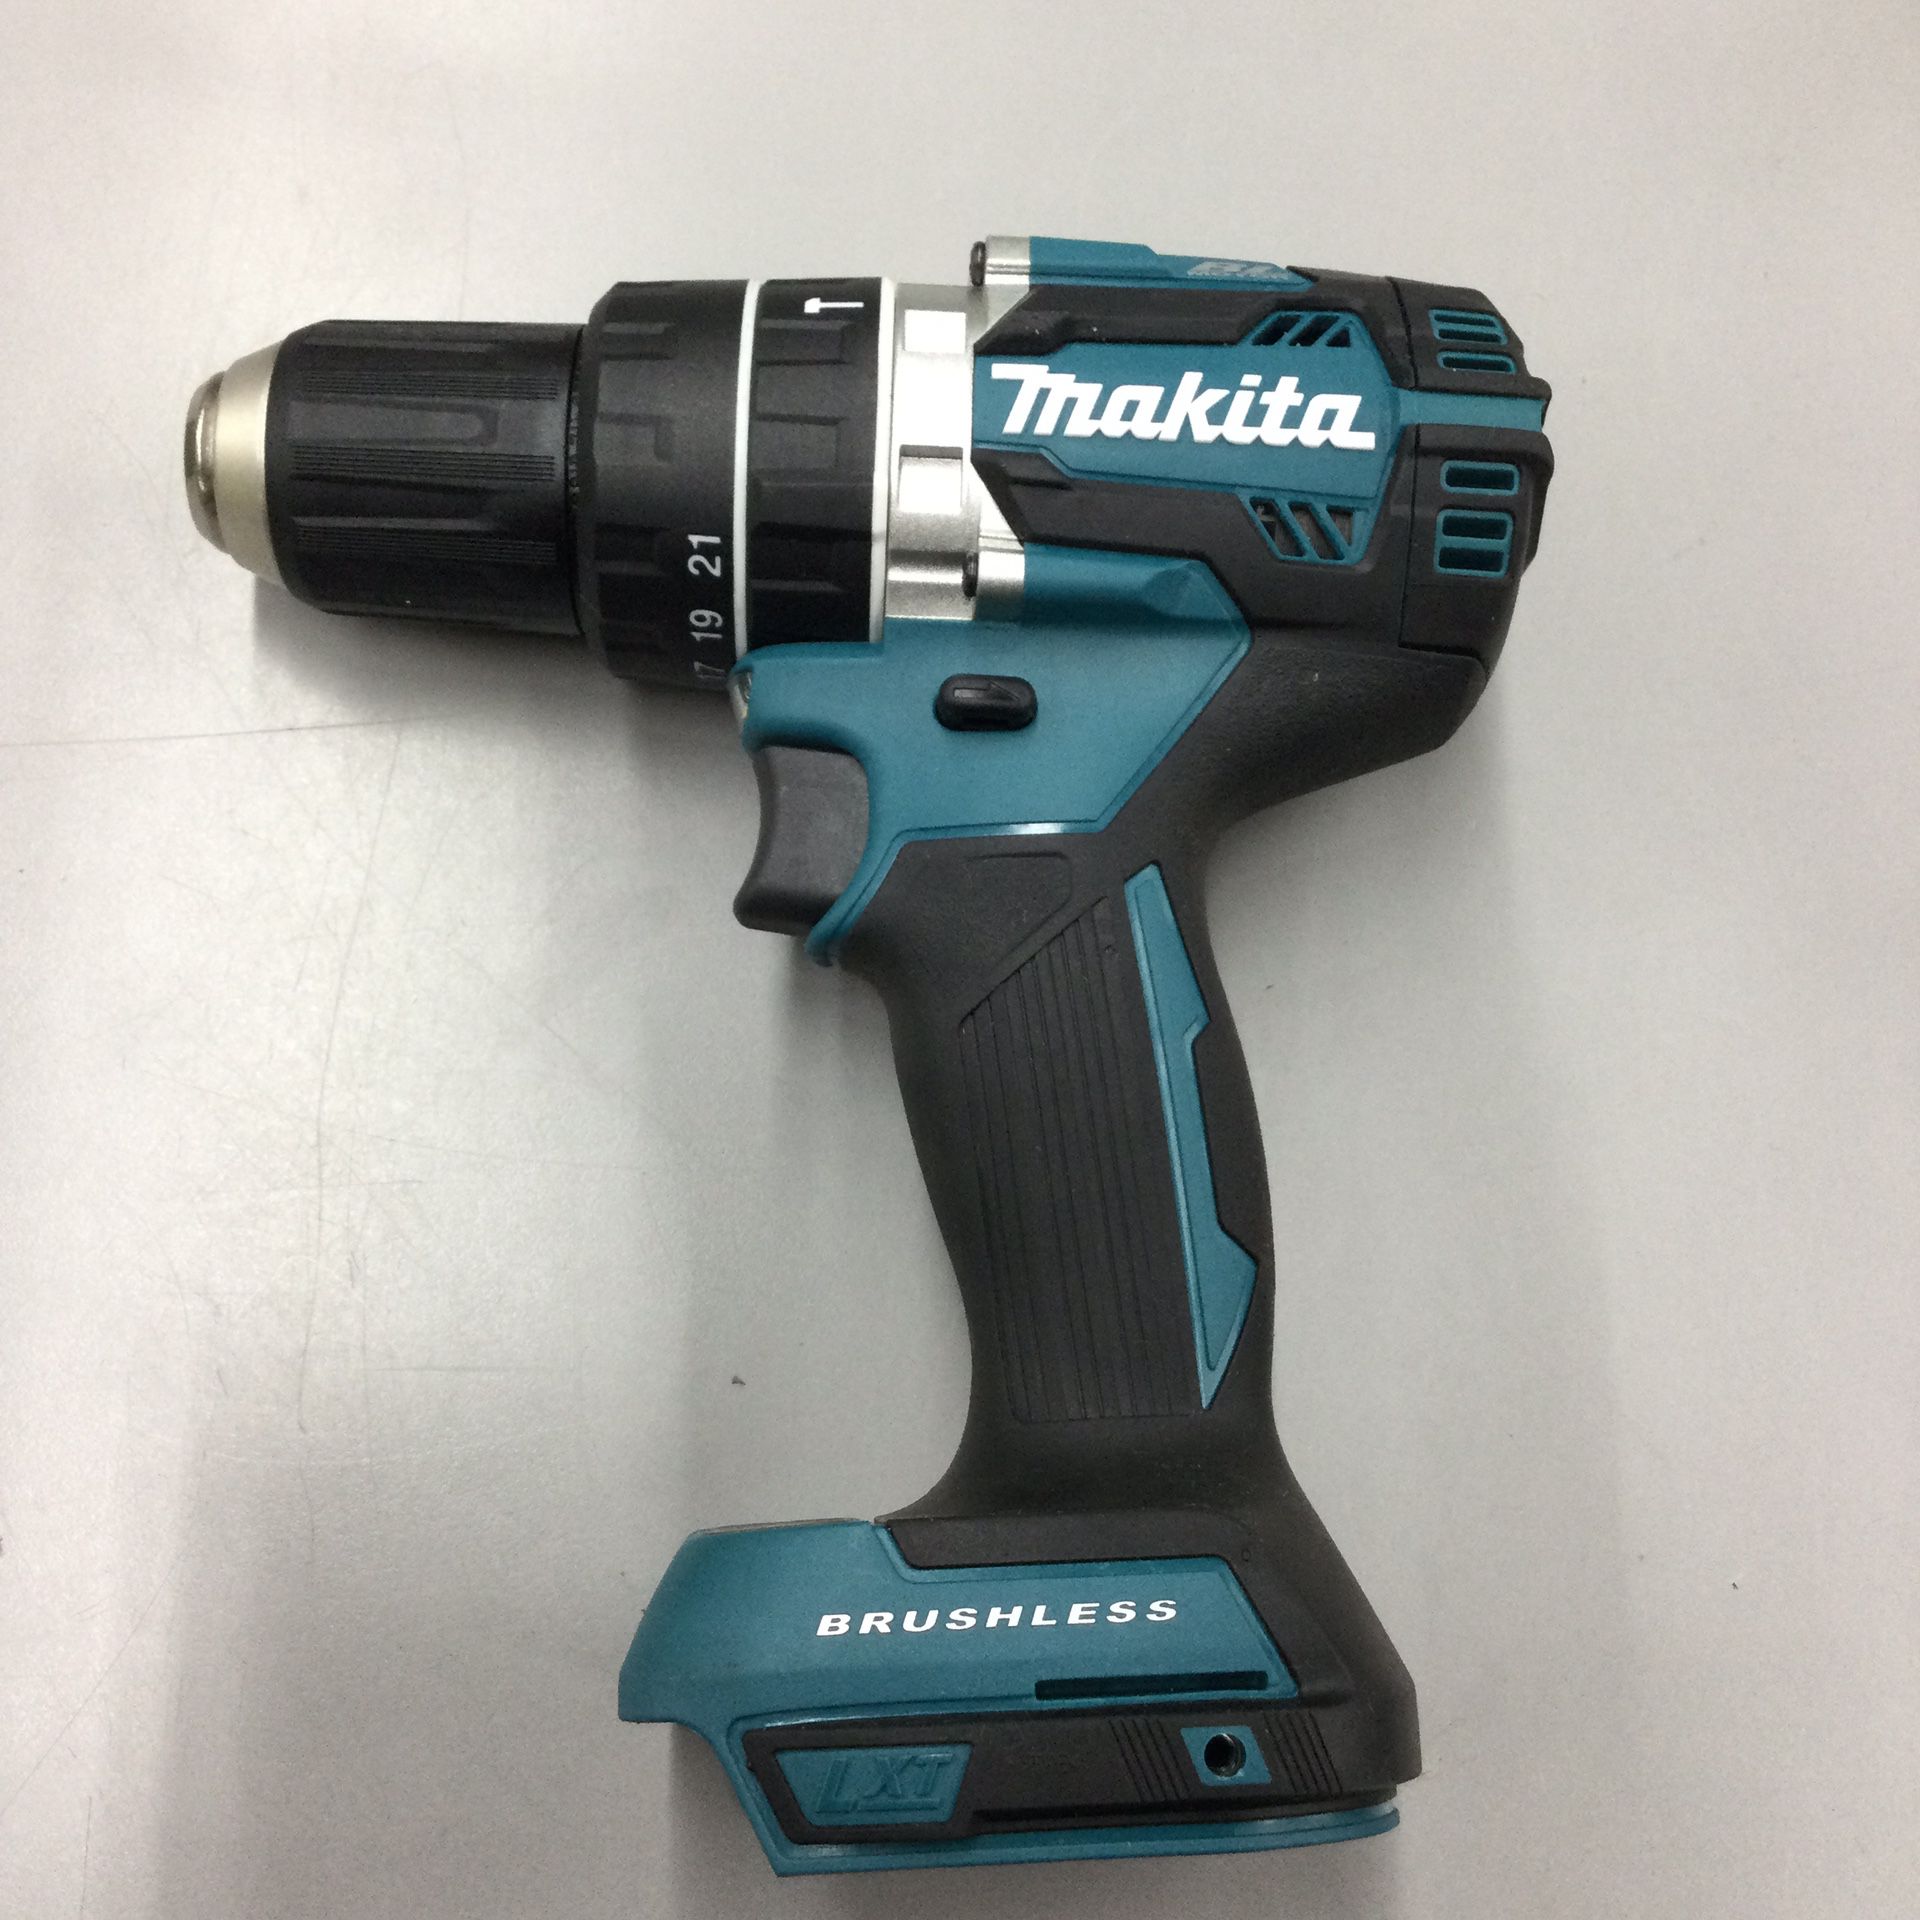 Marital 18V 1/2” Brushless Hammer Drill Driver (Tool Only)